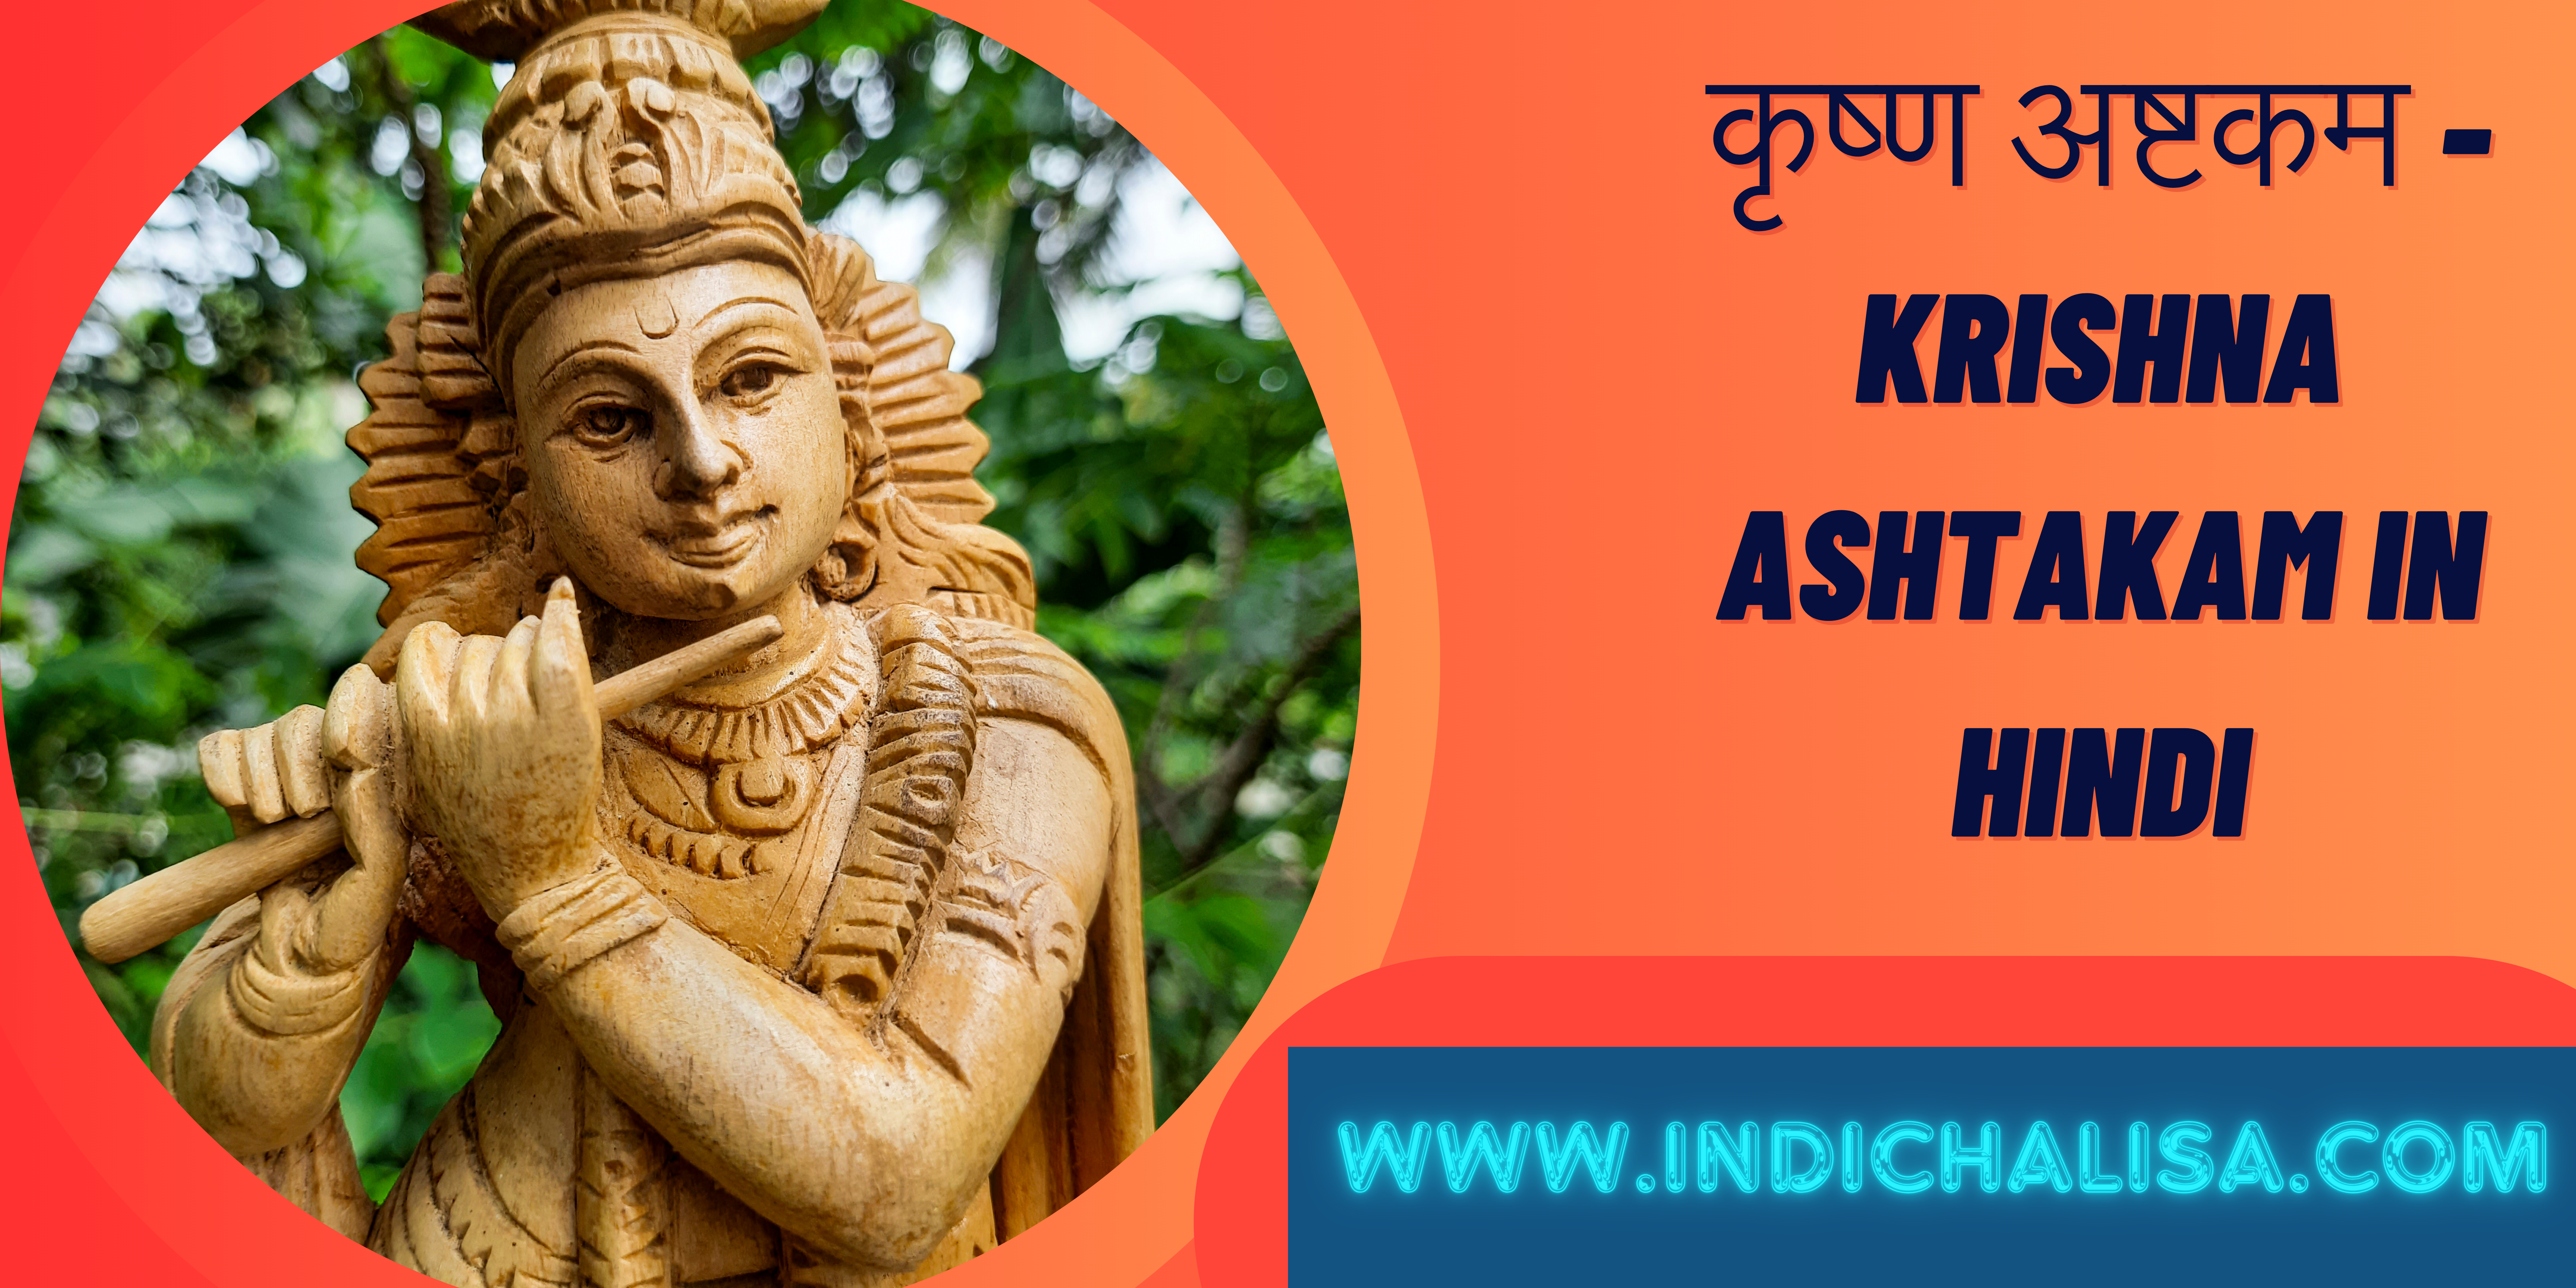 Krishna Ashtakam In Hindi |Krishna Ashtakam In Hindi |Indichalisa|Indichalisa